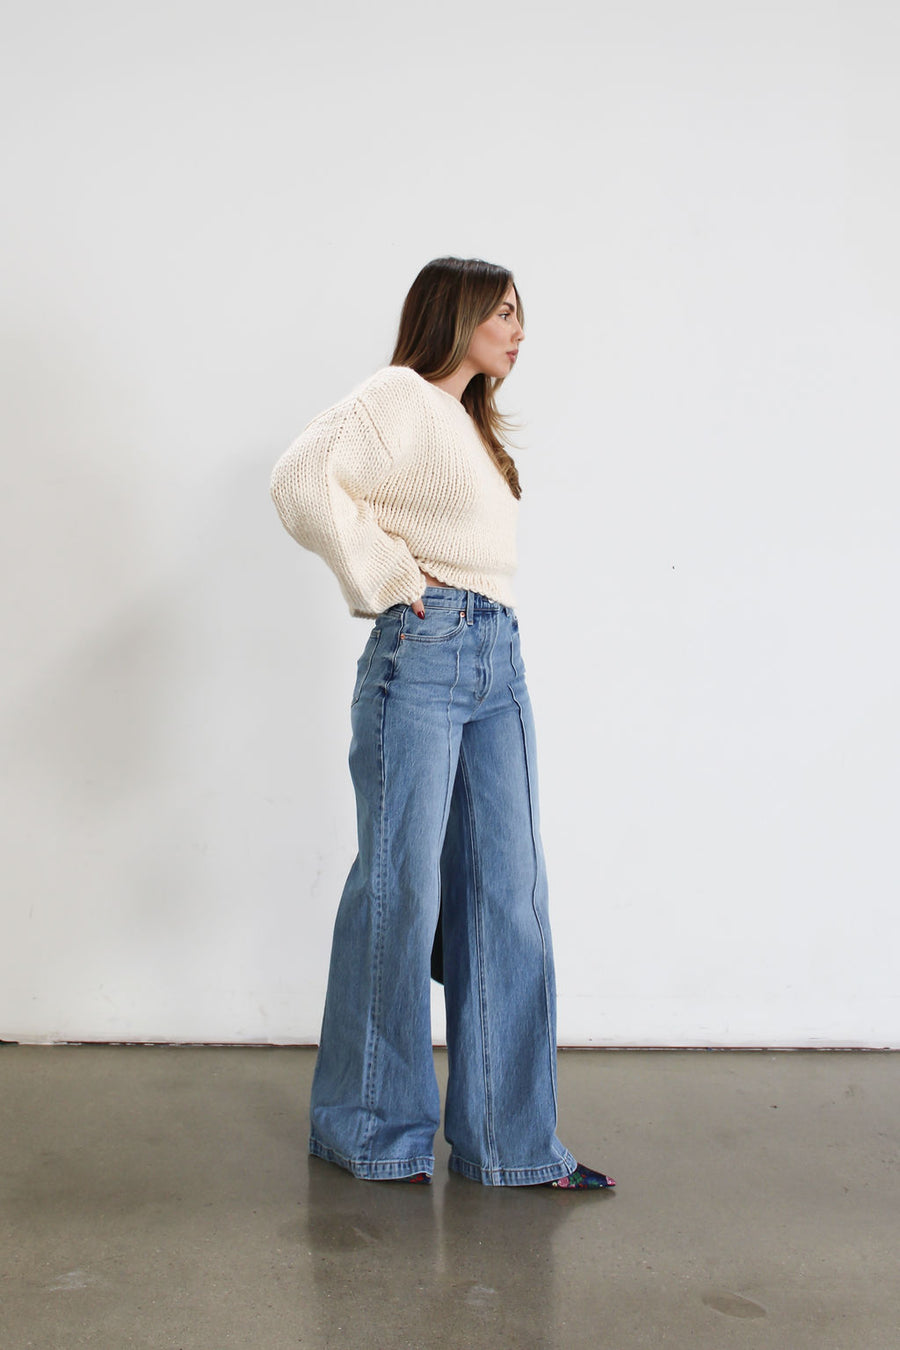 Lana Jeans by Pistola